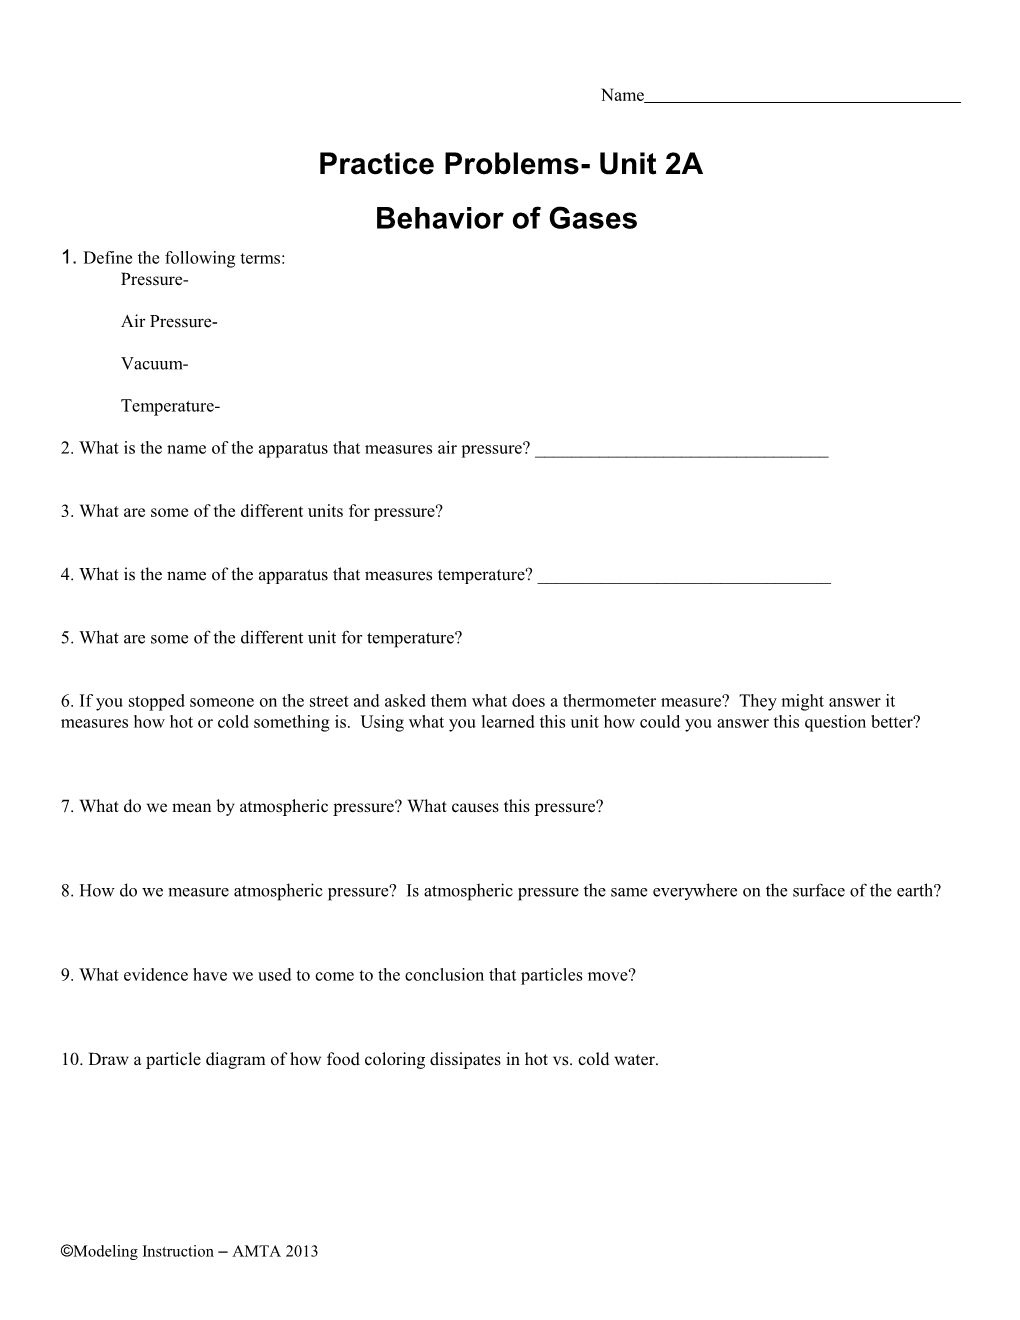 Practice Problems- Unit 2A